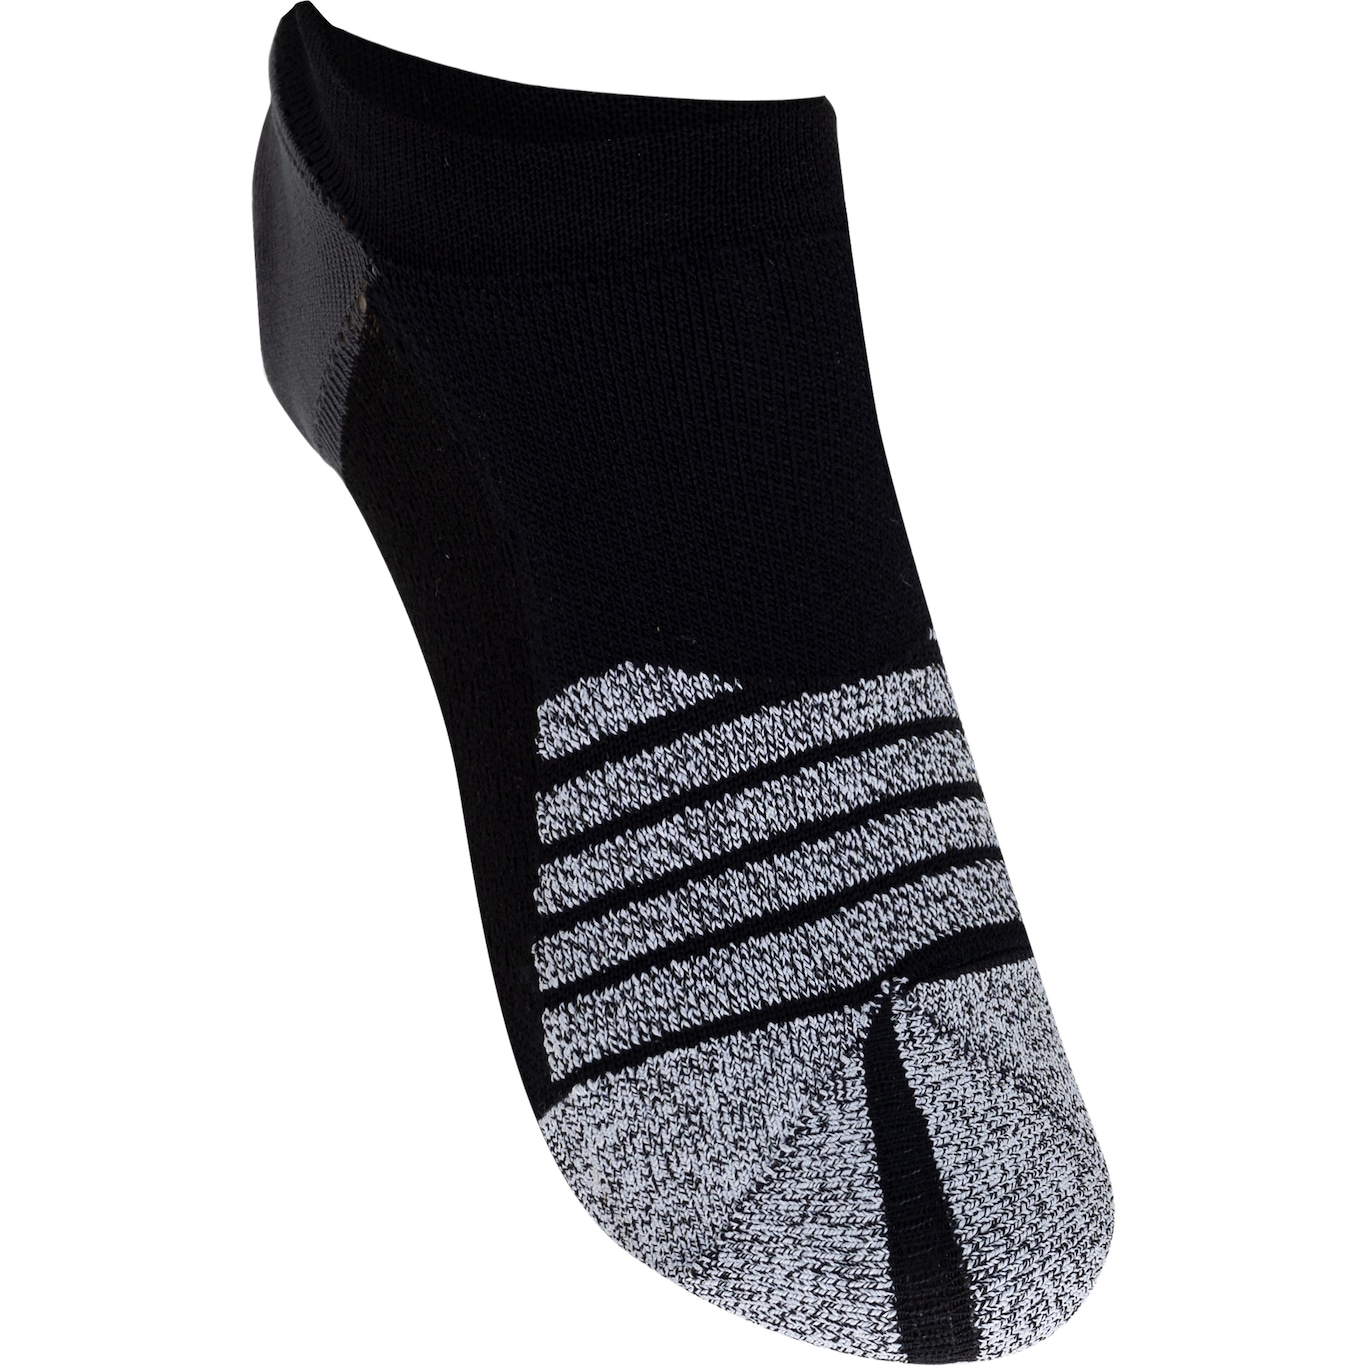 Nike Grip Studio socks in black